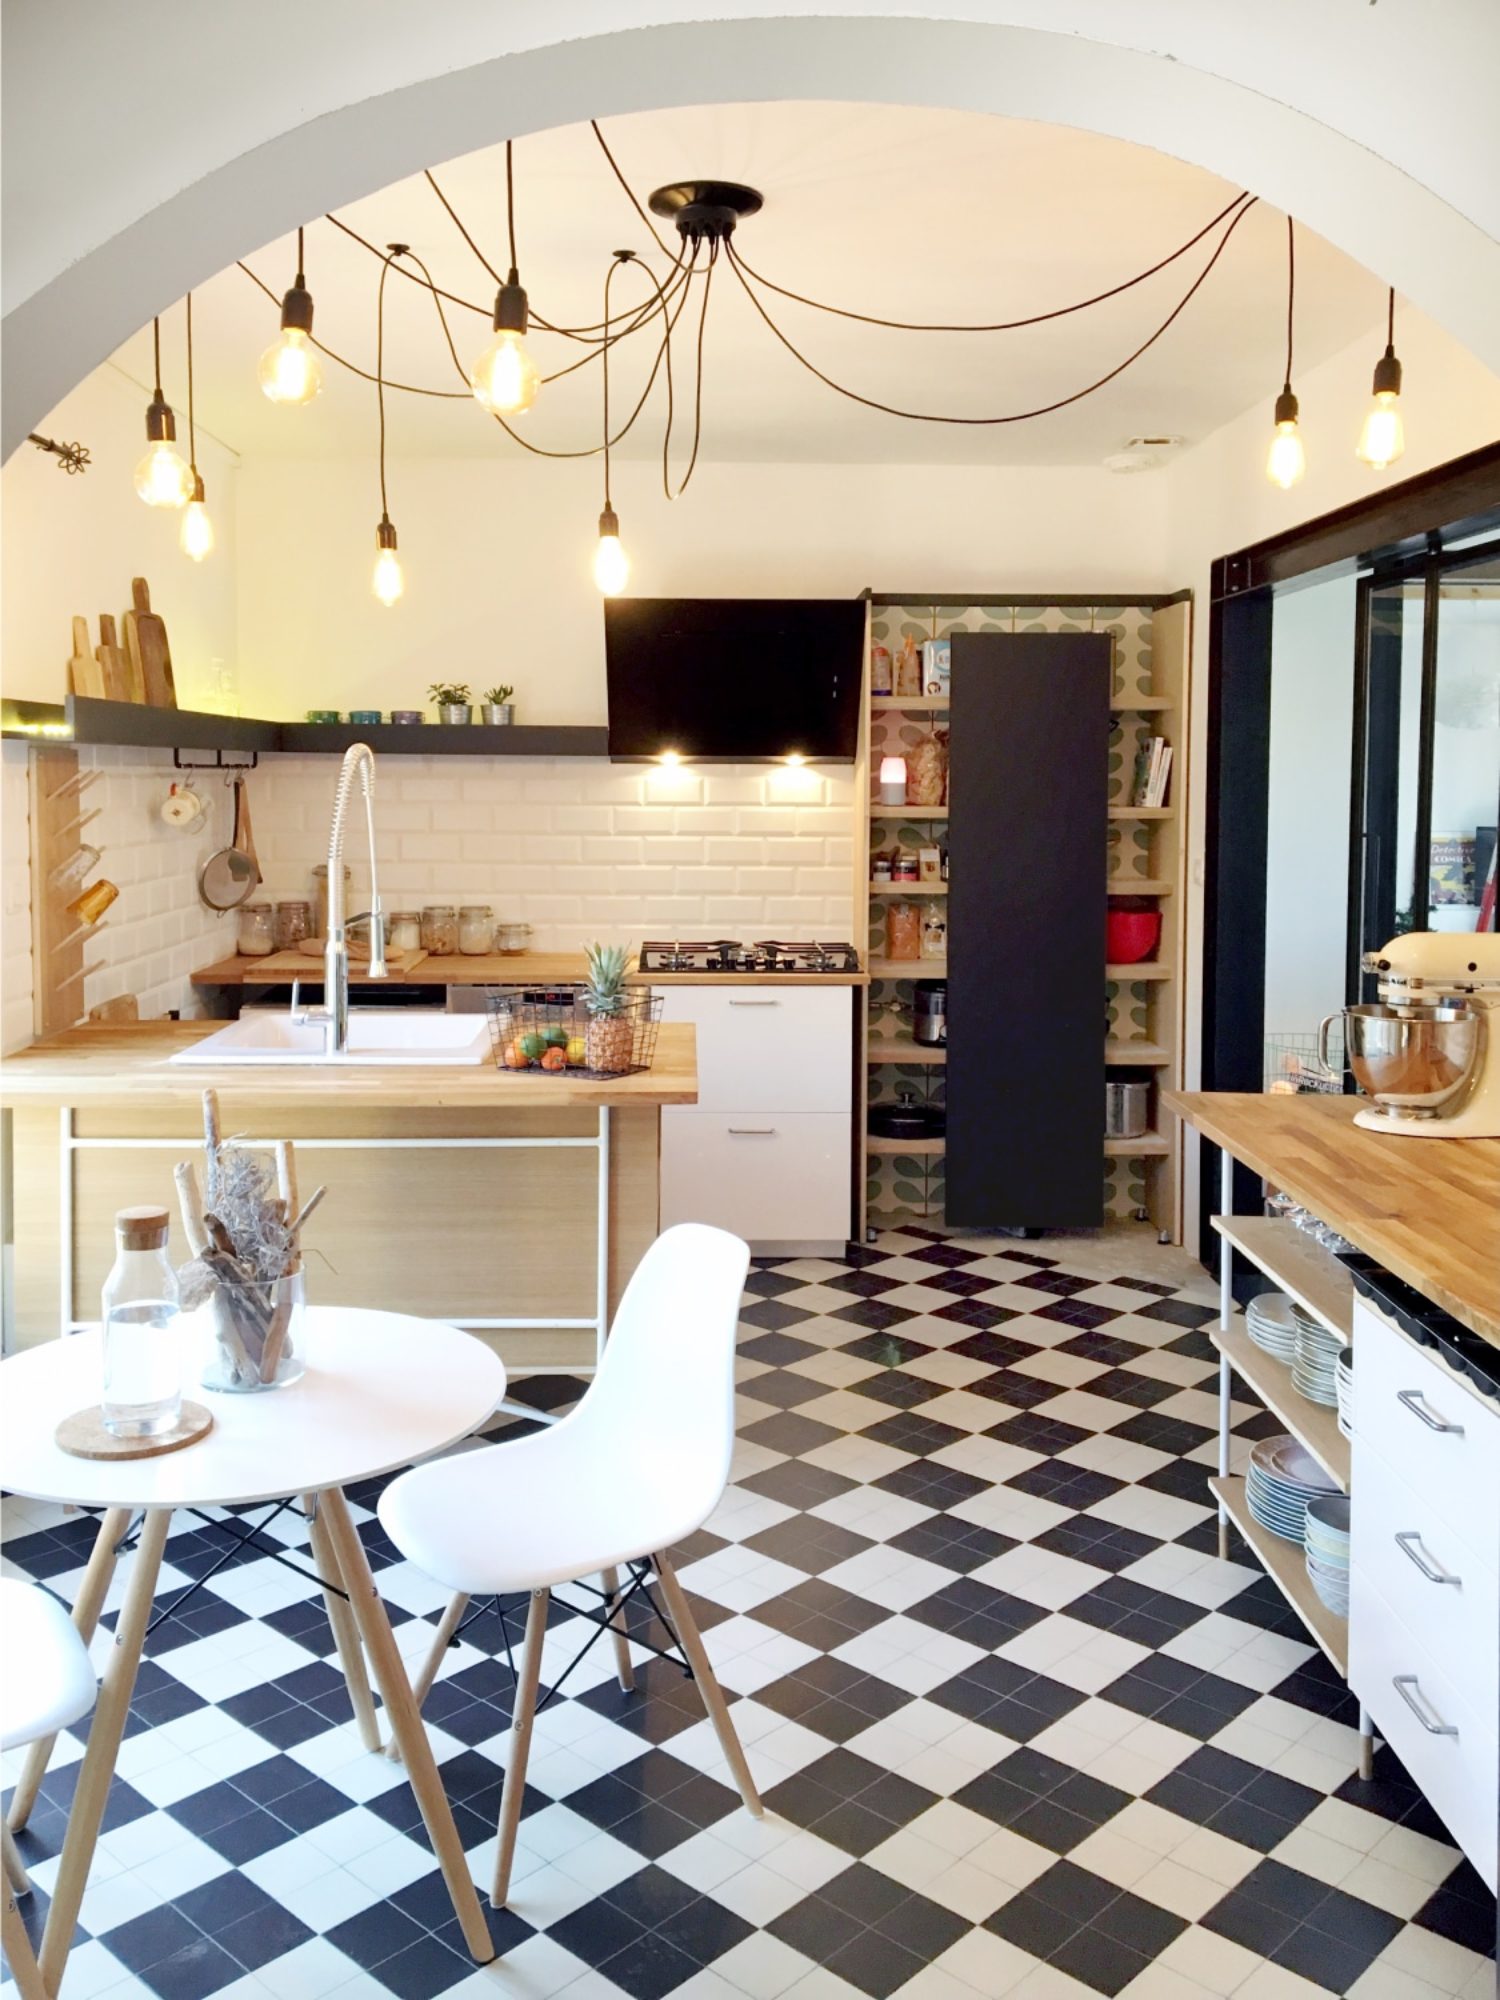 CUISINE • Création d’une cuisine originale dans une maison rénovée à Toulouse